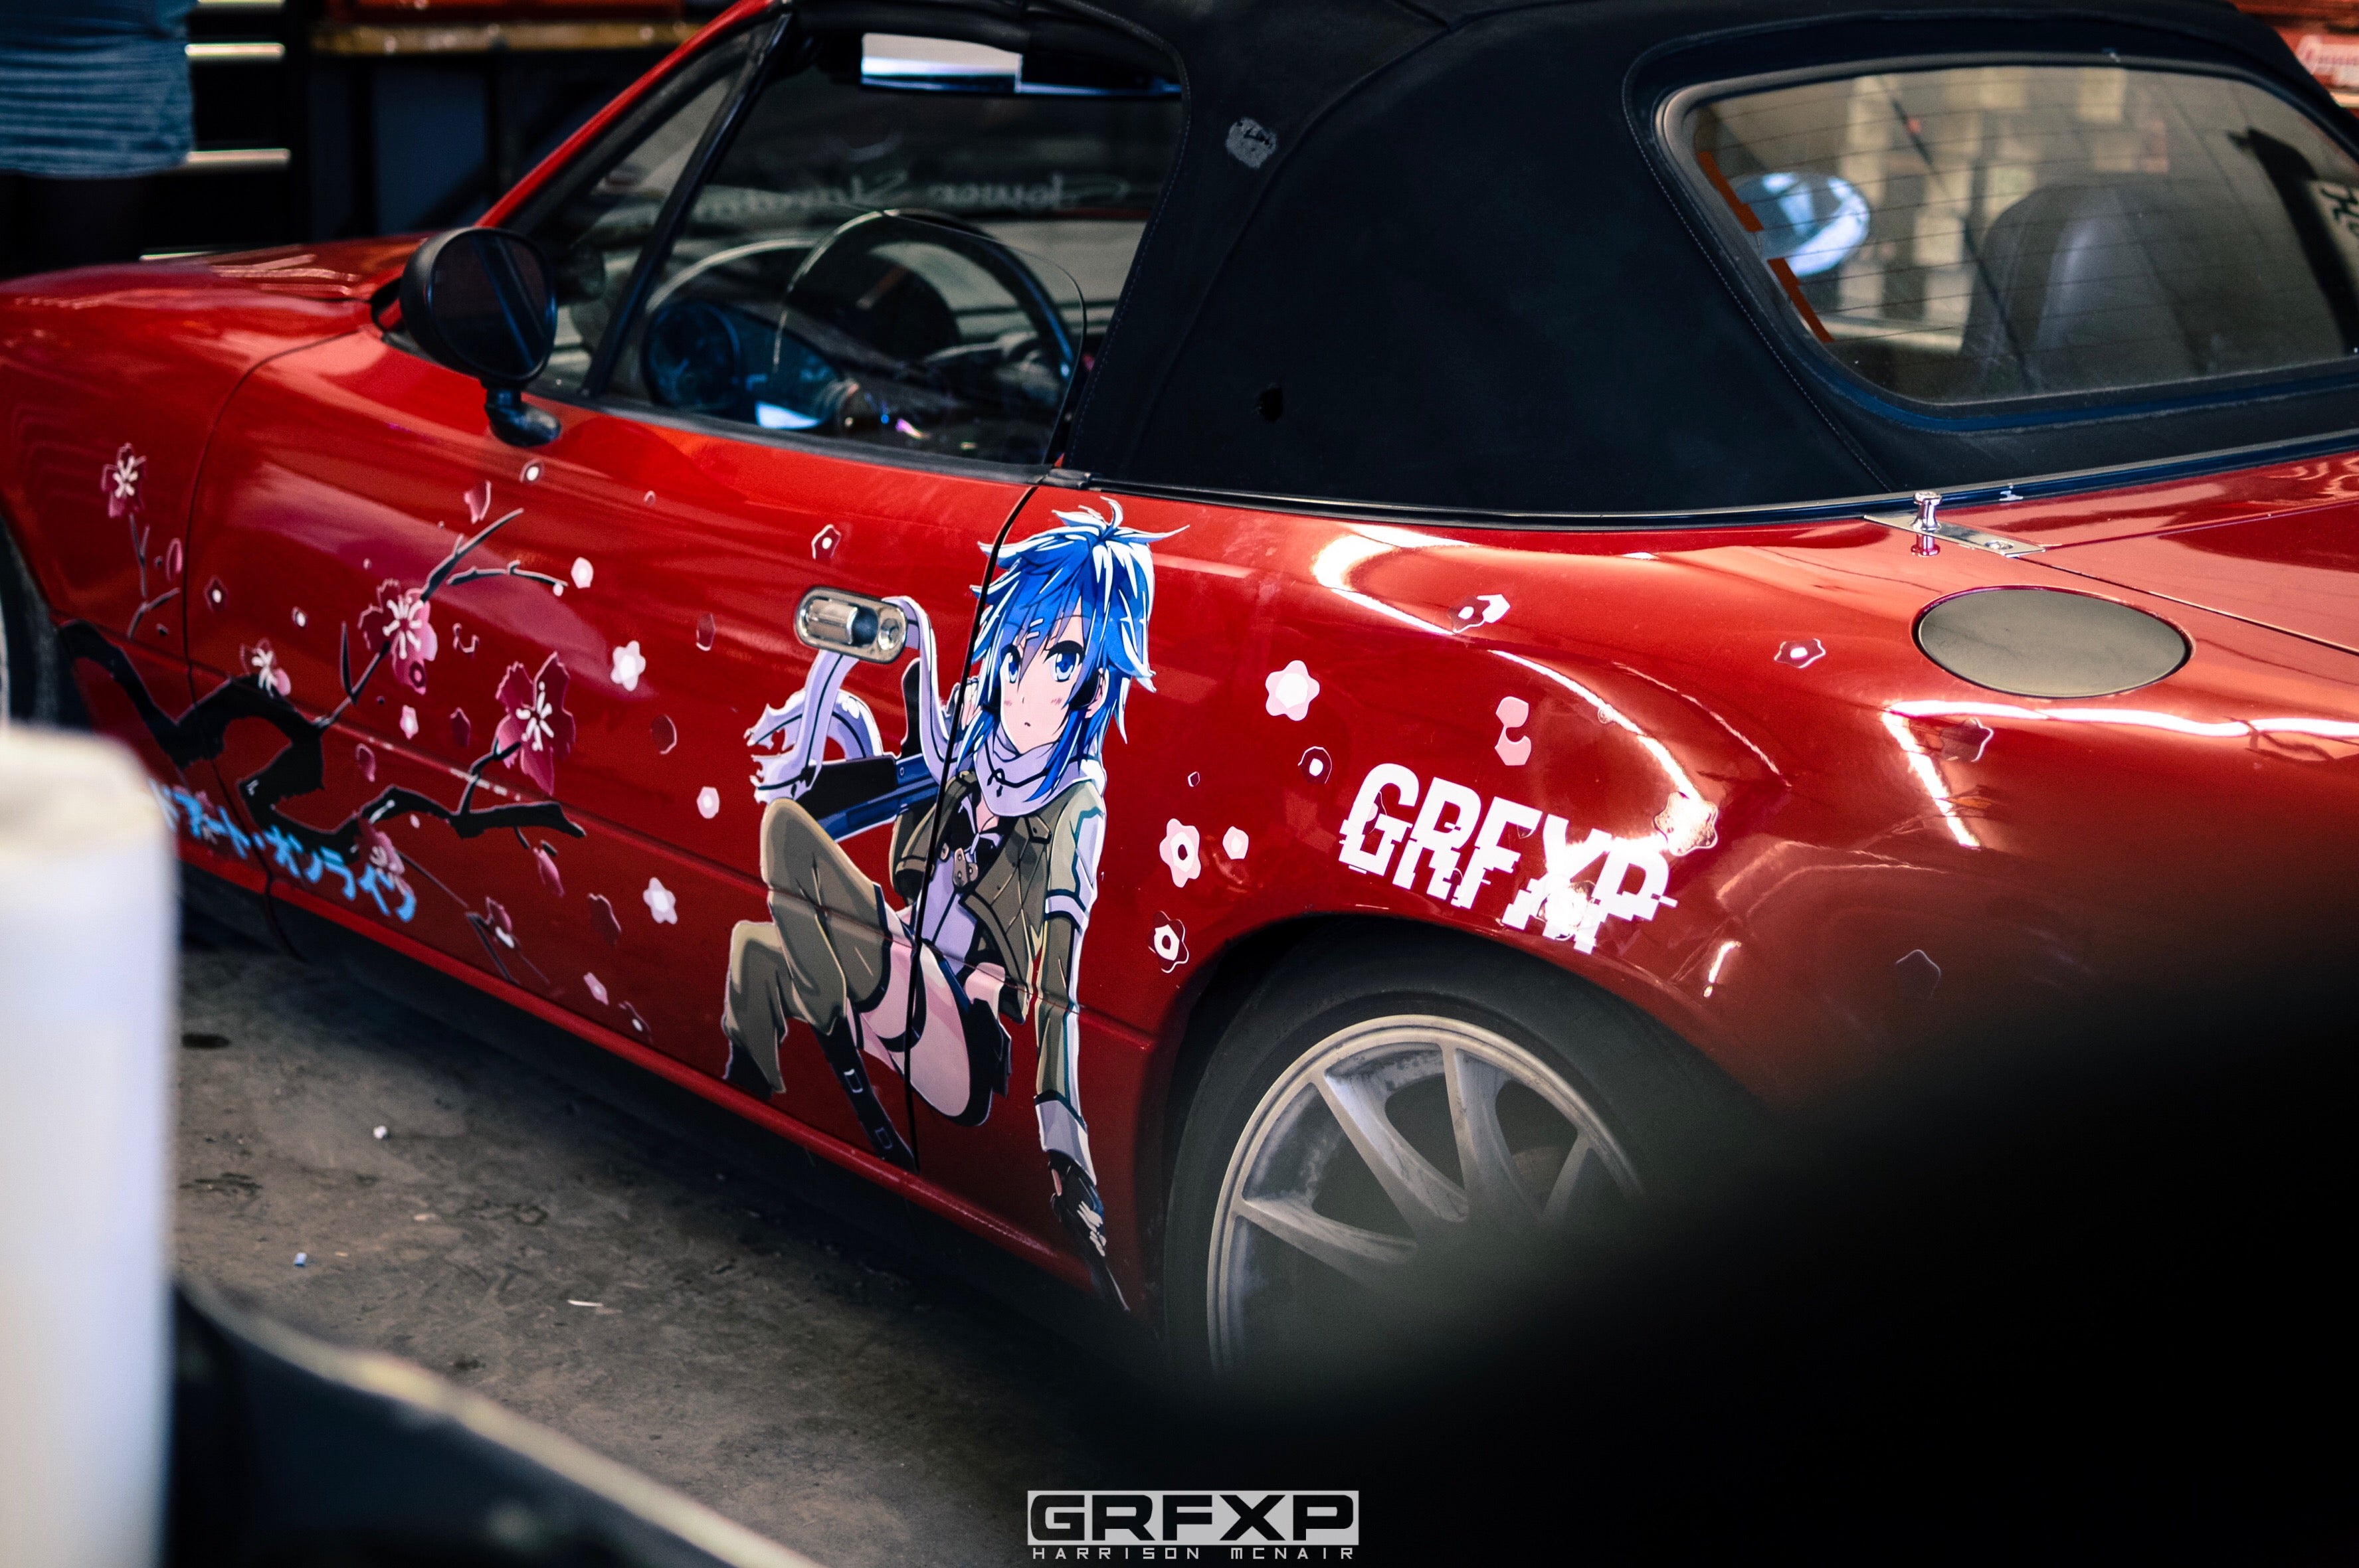 grfxp grafixpressions custom designed anime livery miata wrx cherry blossom